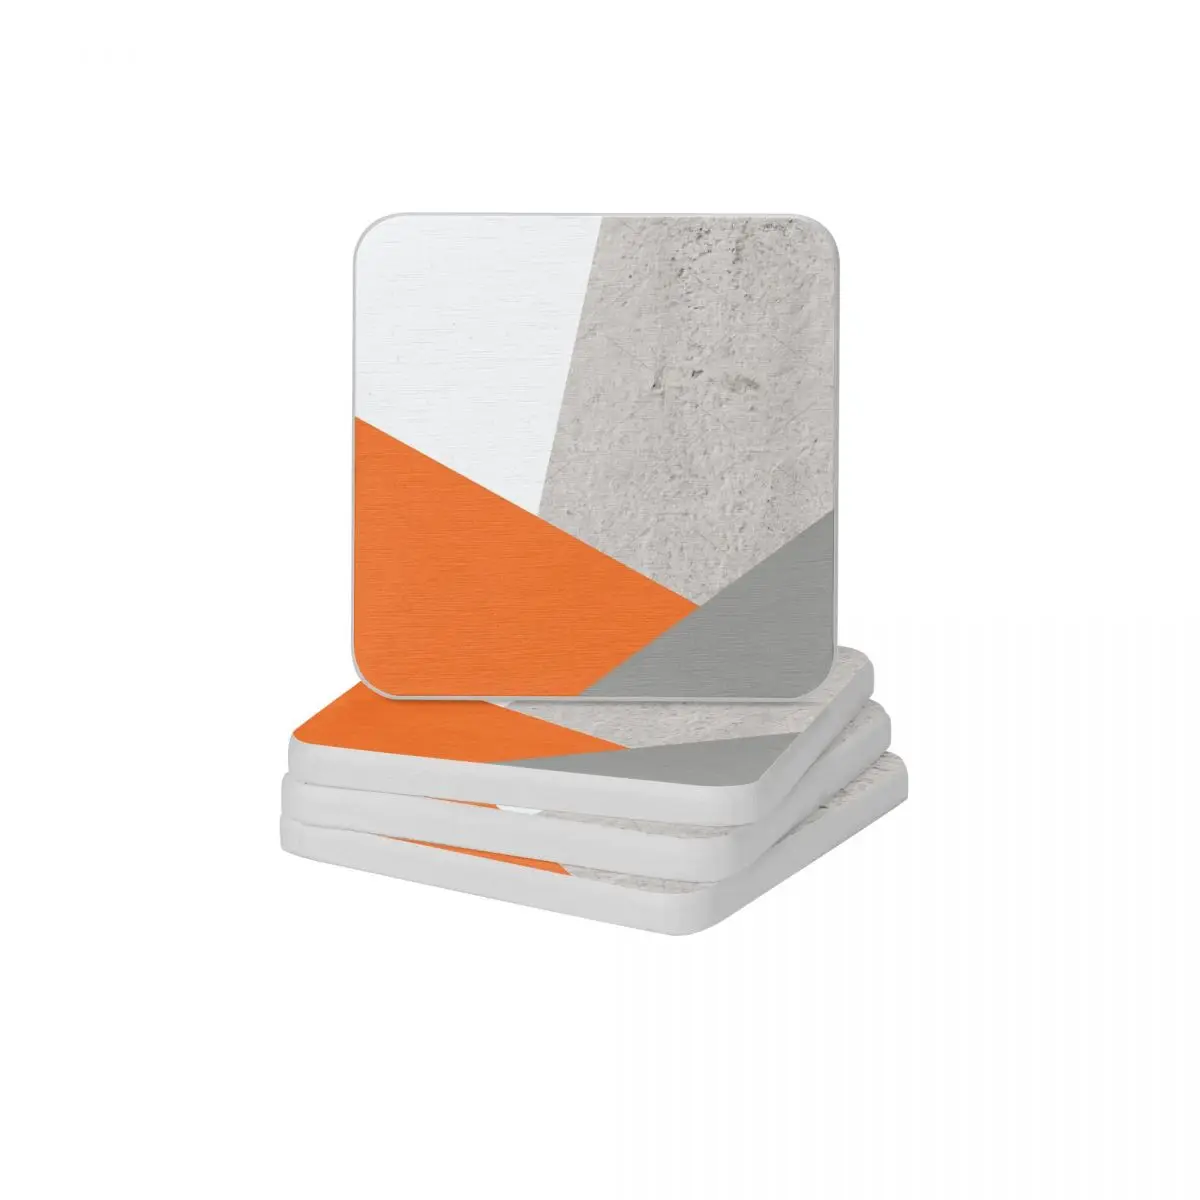 

Серо-оранжевый и бетонный цветной блок, диатомная квадратная круглая подставка Поглощение воды Коврик для мыла и зубной щетки 10x10 см